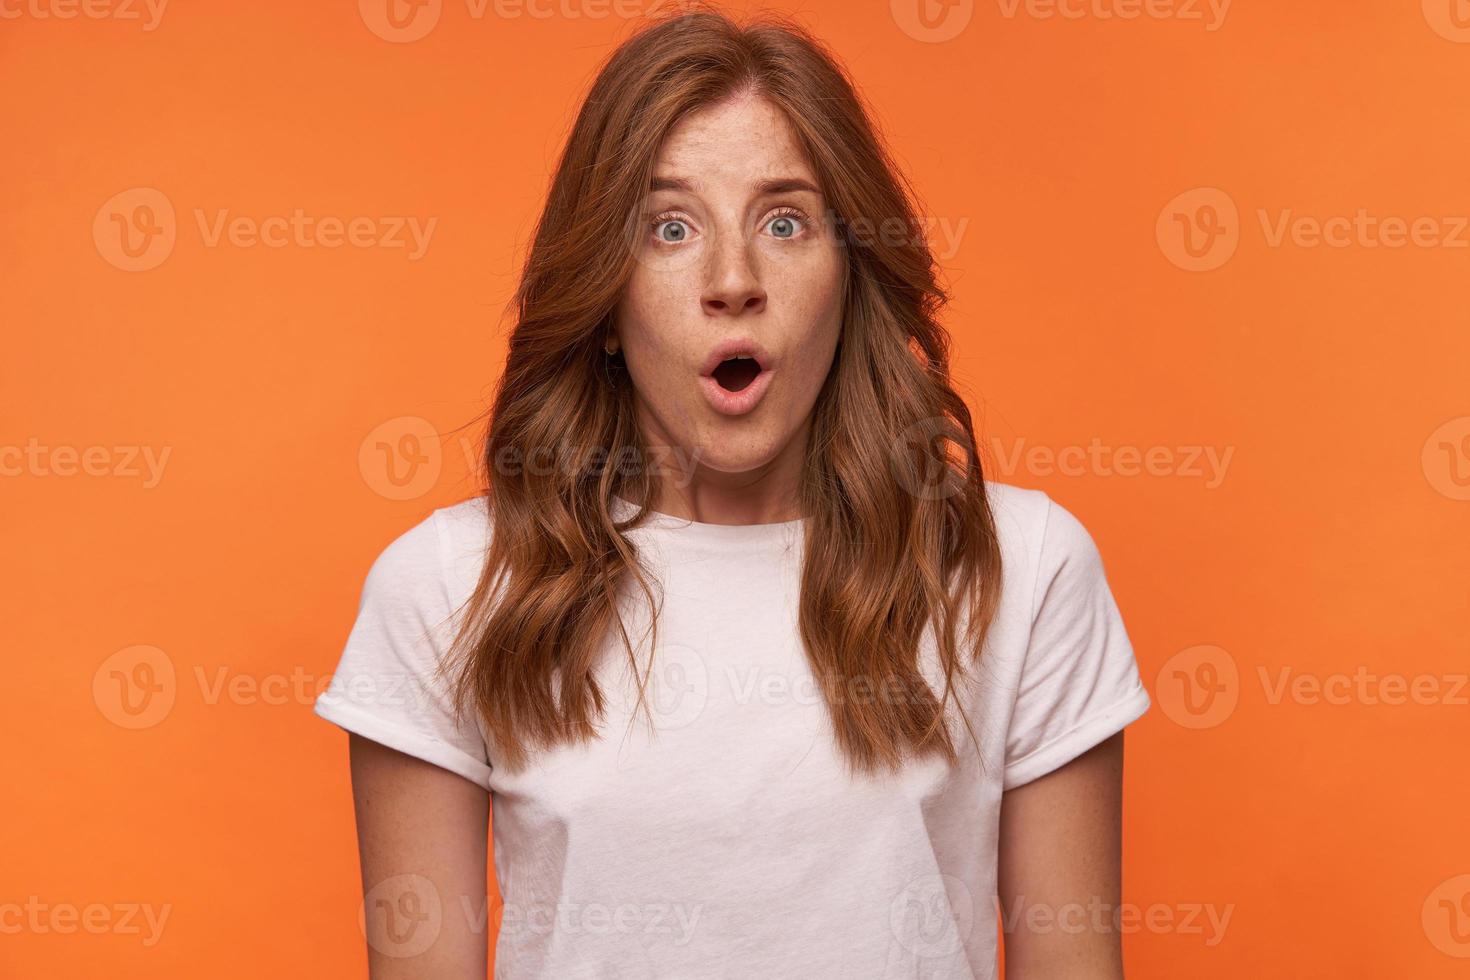 foto de estúdio de chocada mulher jovem com cabelo ruivo encaracolado em pé sobre fundo laranja, olhando surpresa para a câmera com a boca aberta